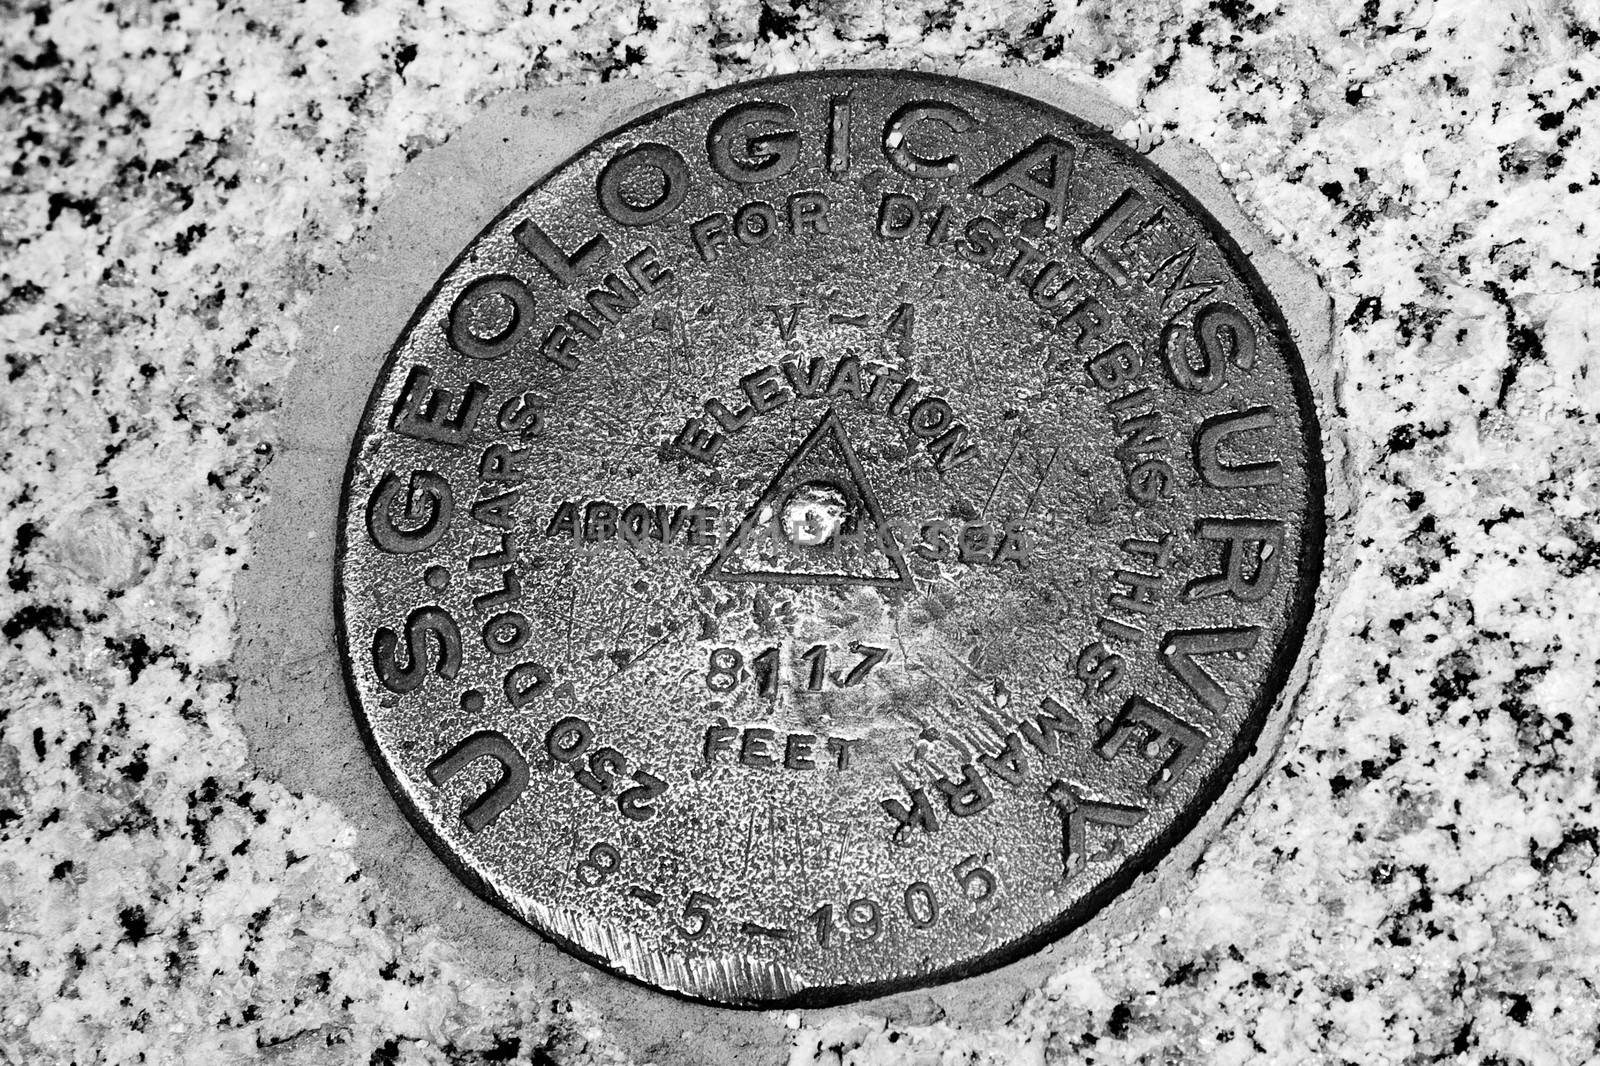 US Geological Survey marker by CelsoDiniz